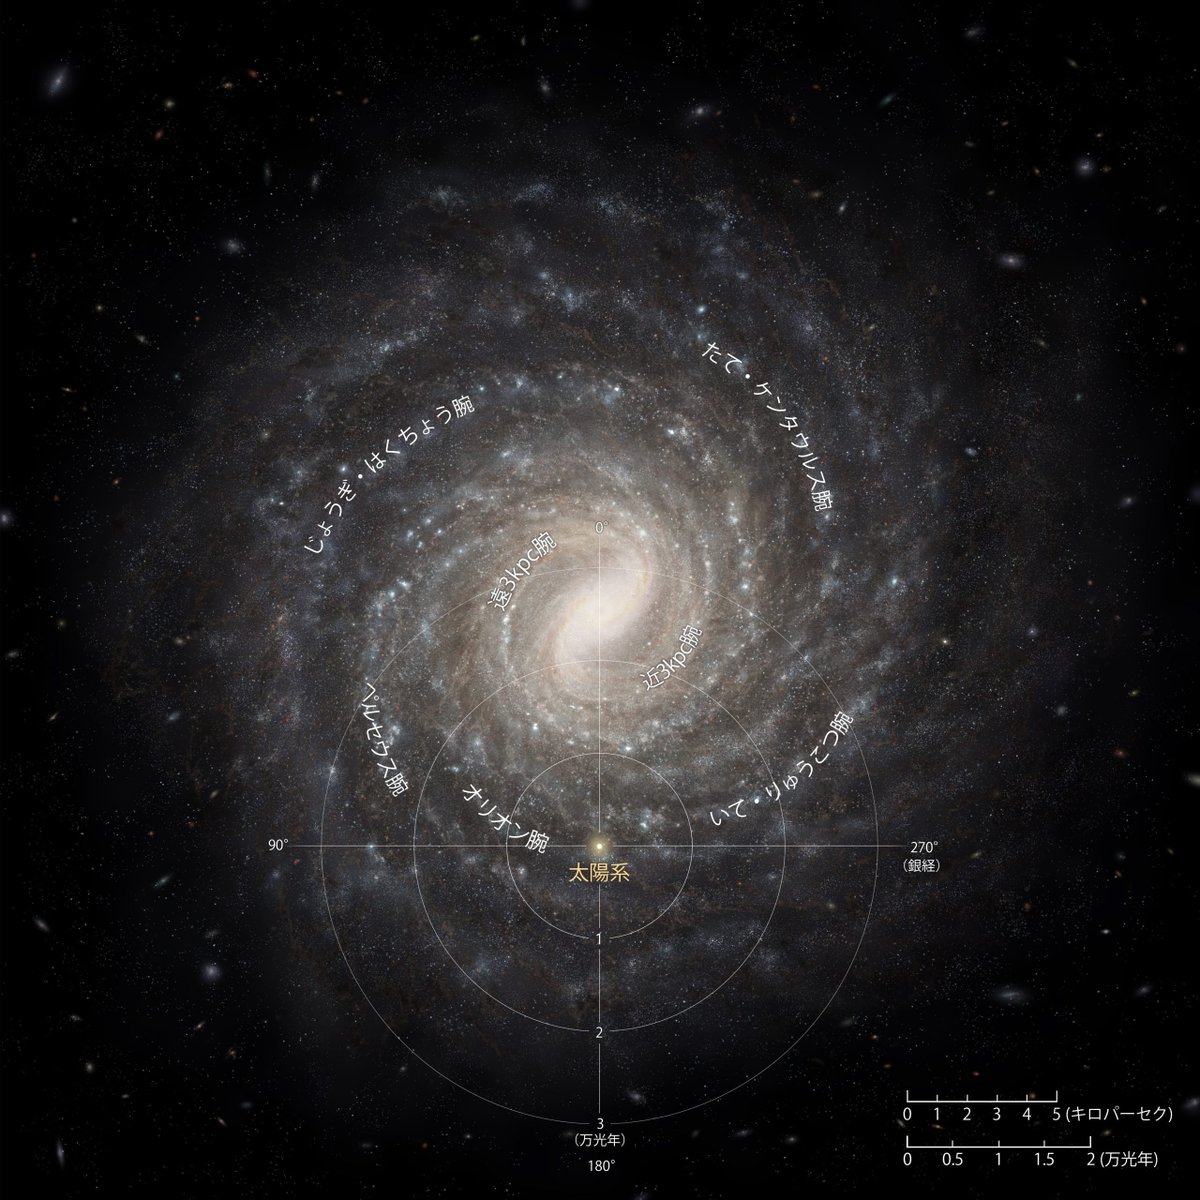 【仕事絵】2023年5月号の天文月報に天の川銀河の平面図が掲載されました.これまでNASAの画像が永く用いられてきた中で,最新の科学成果に基づく国産の想像図を製作しました.国際的に広く用いられれば幸いです. 